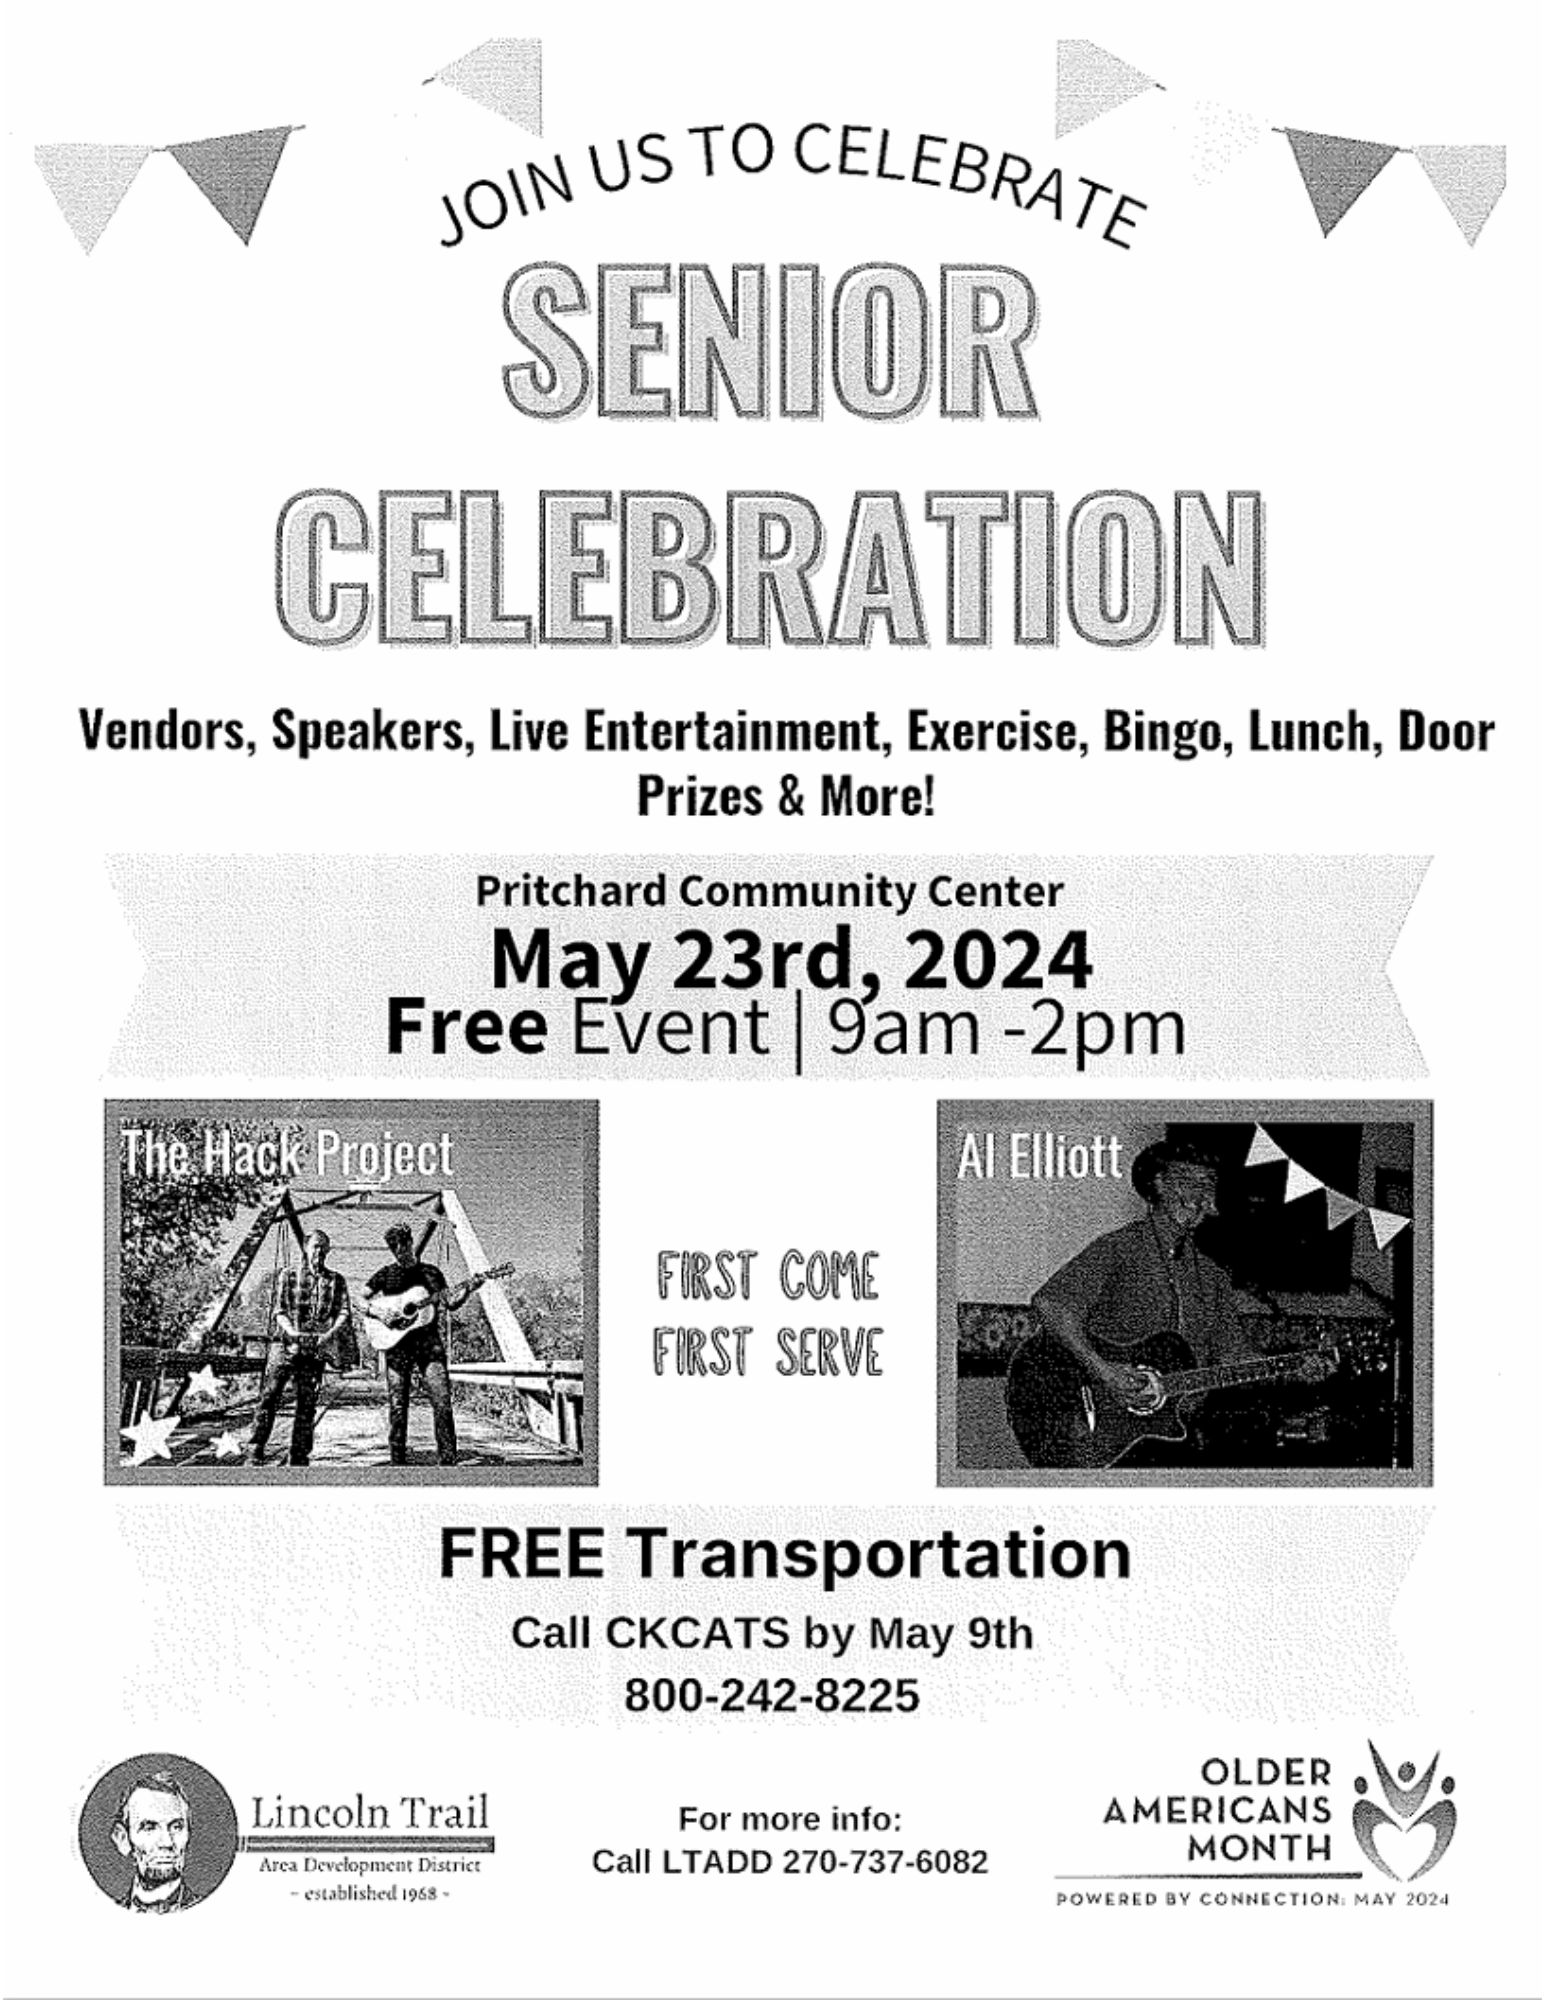 Senior Celebration